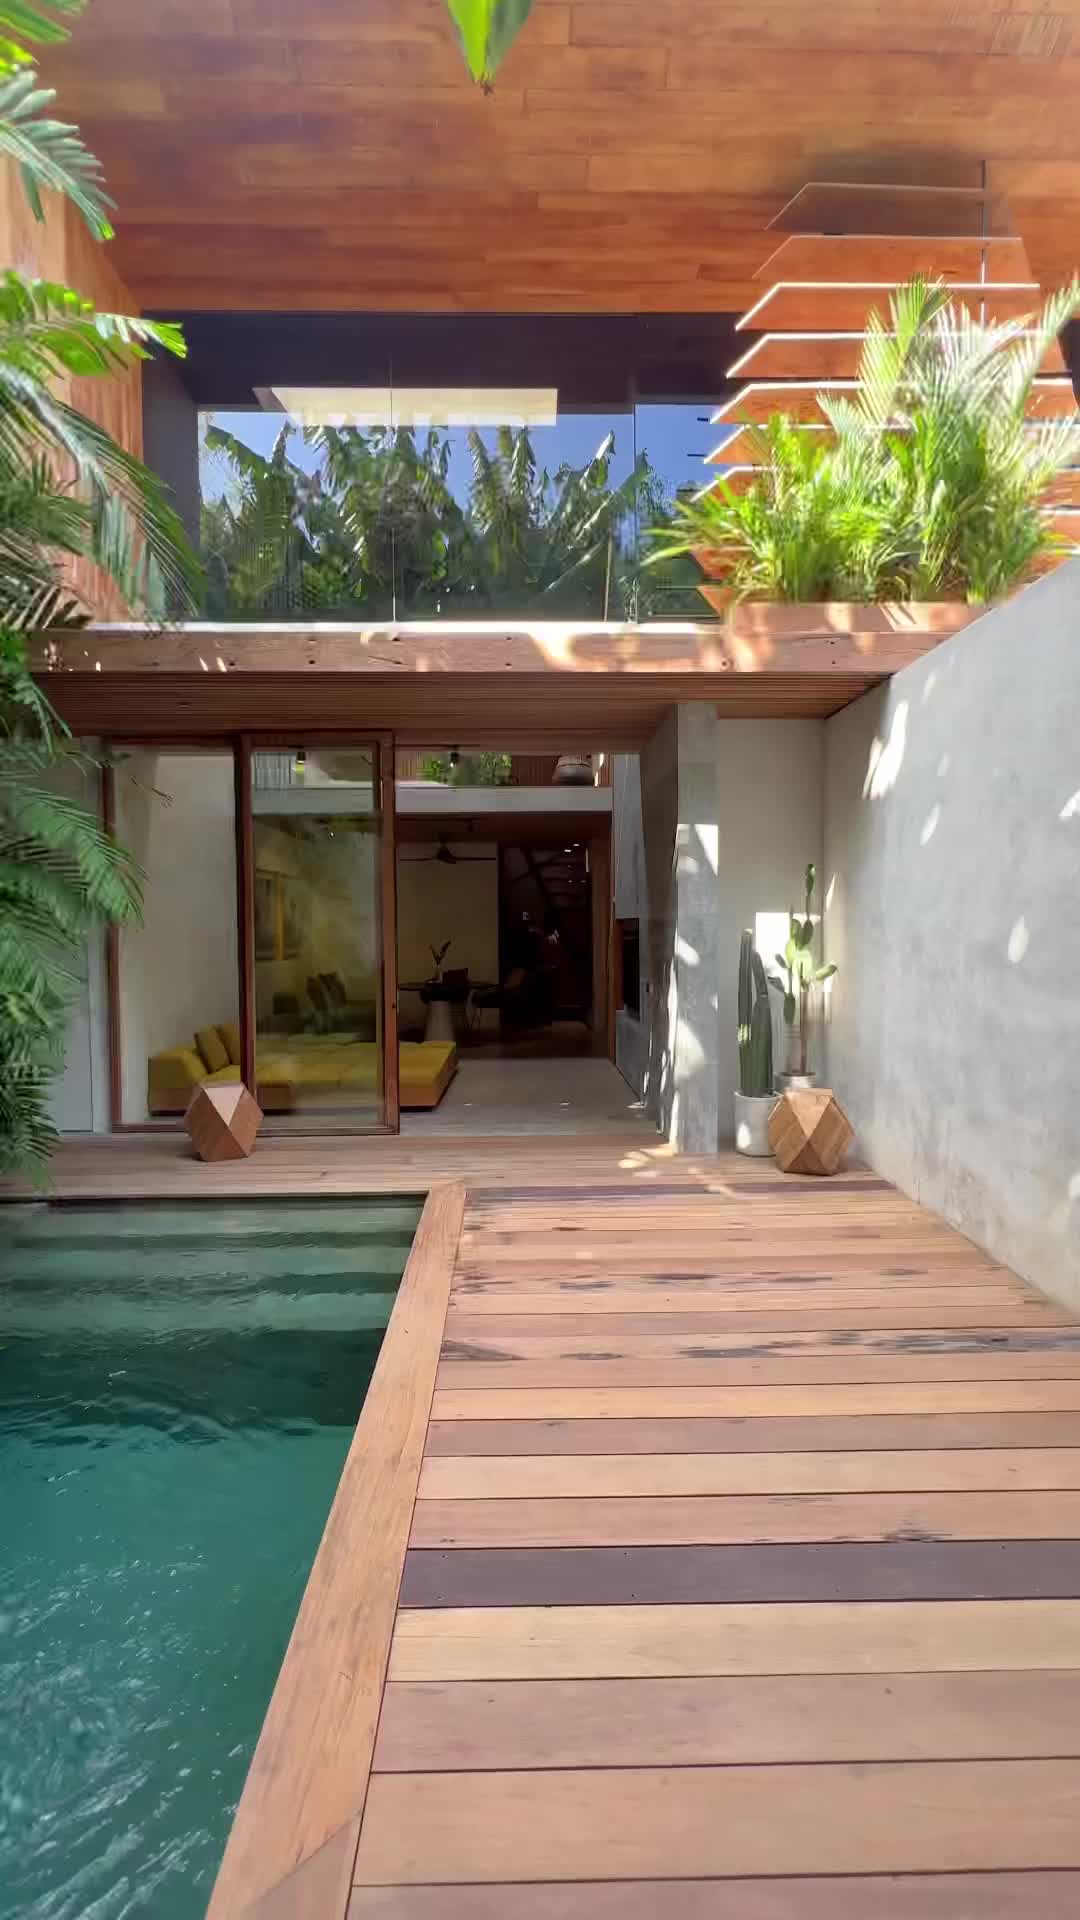 Dream Villa with Unique Bali Architecture in Kralendijk